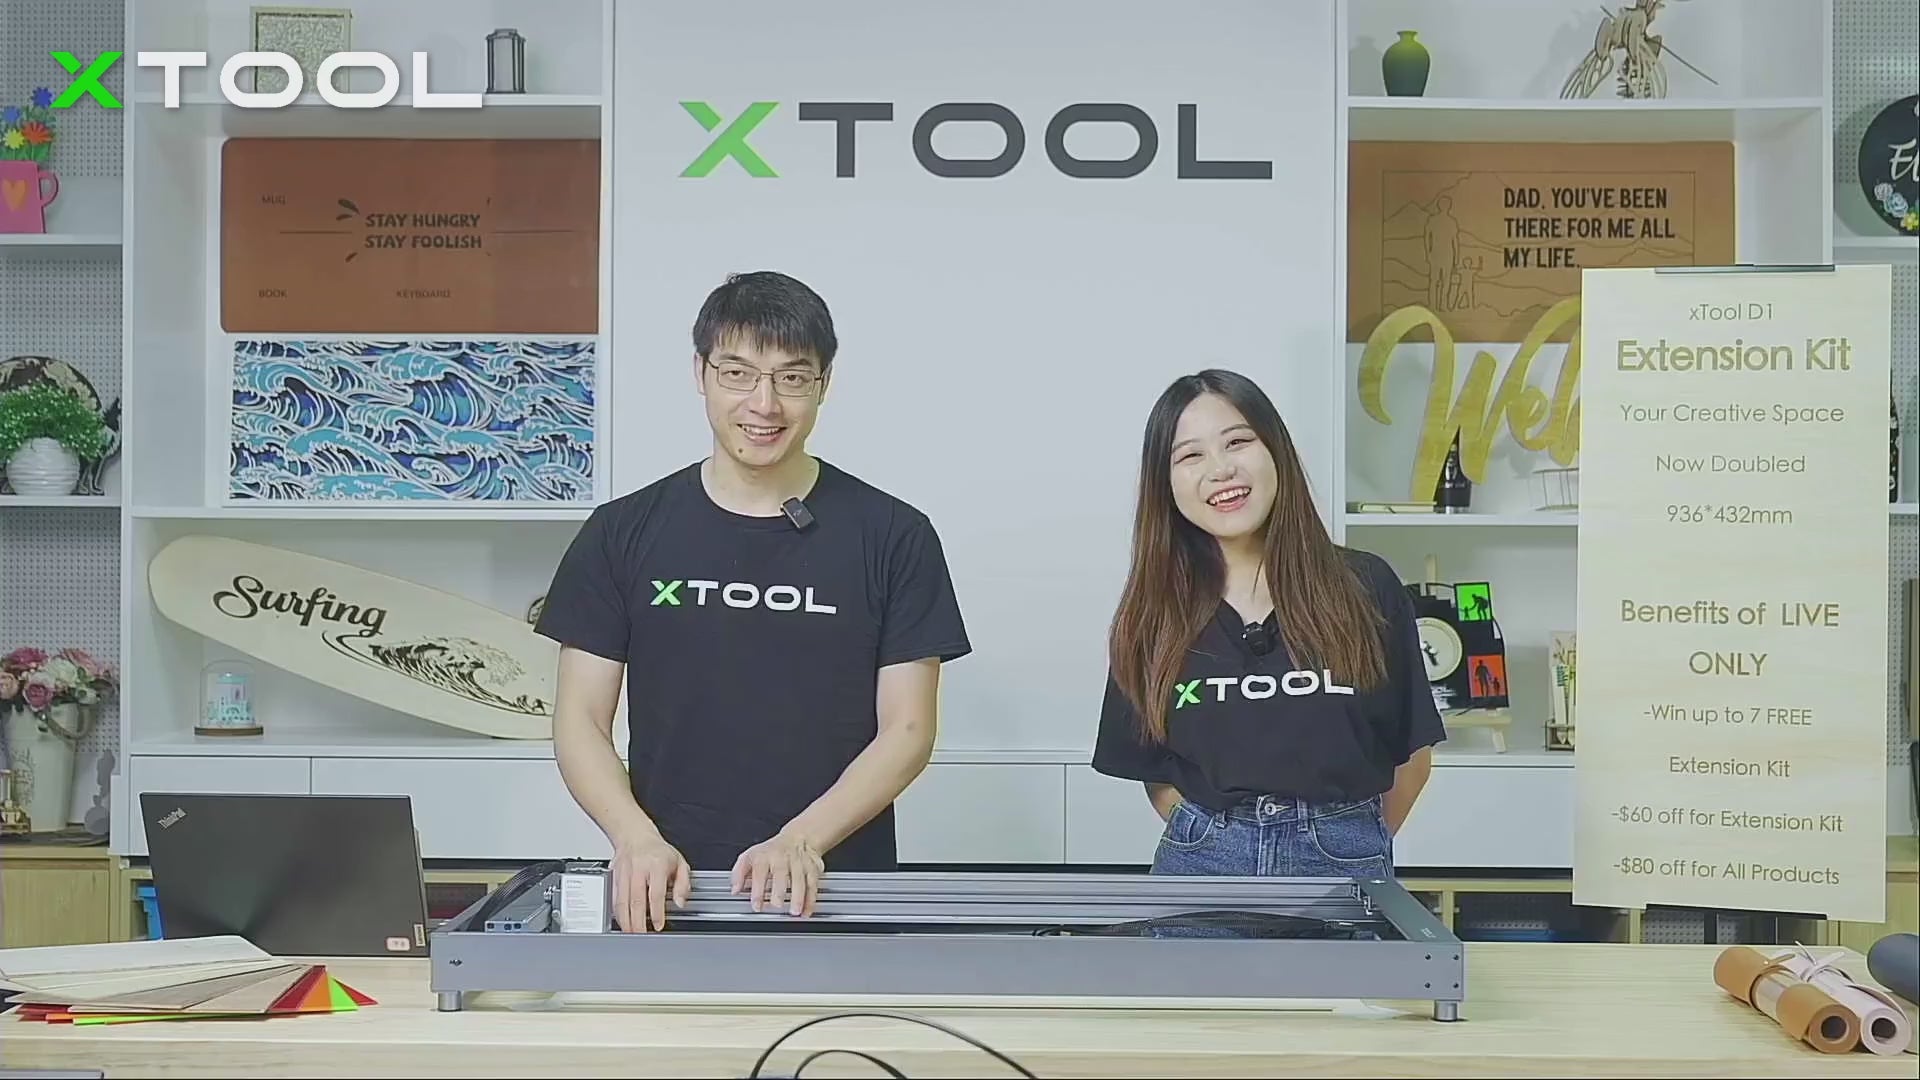 xTool D1 Pro: Extension Kit